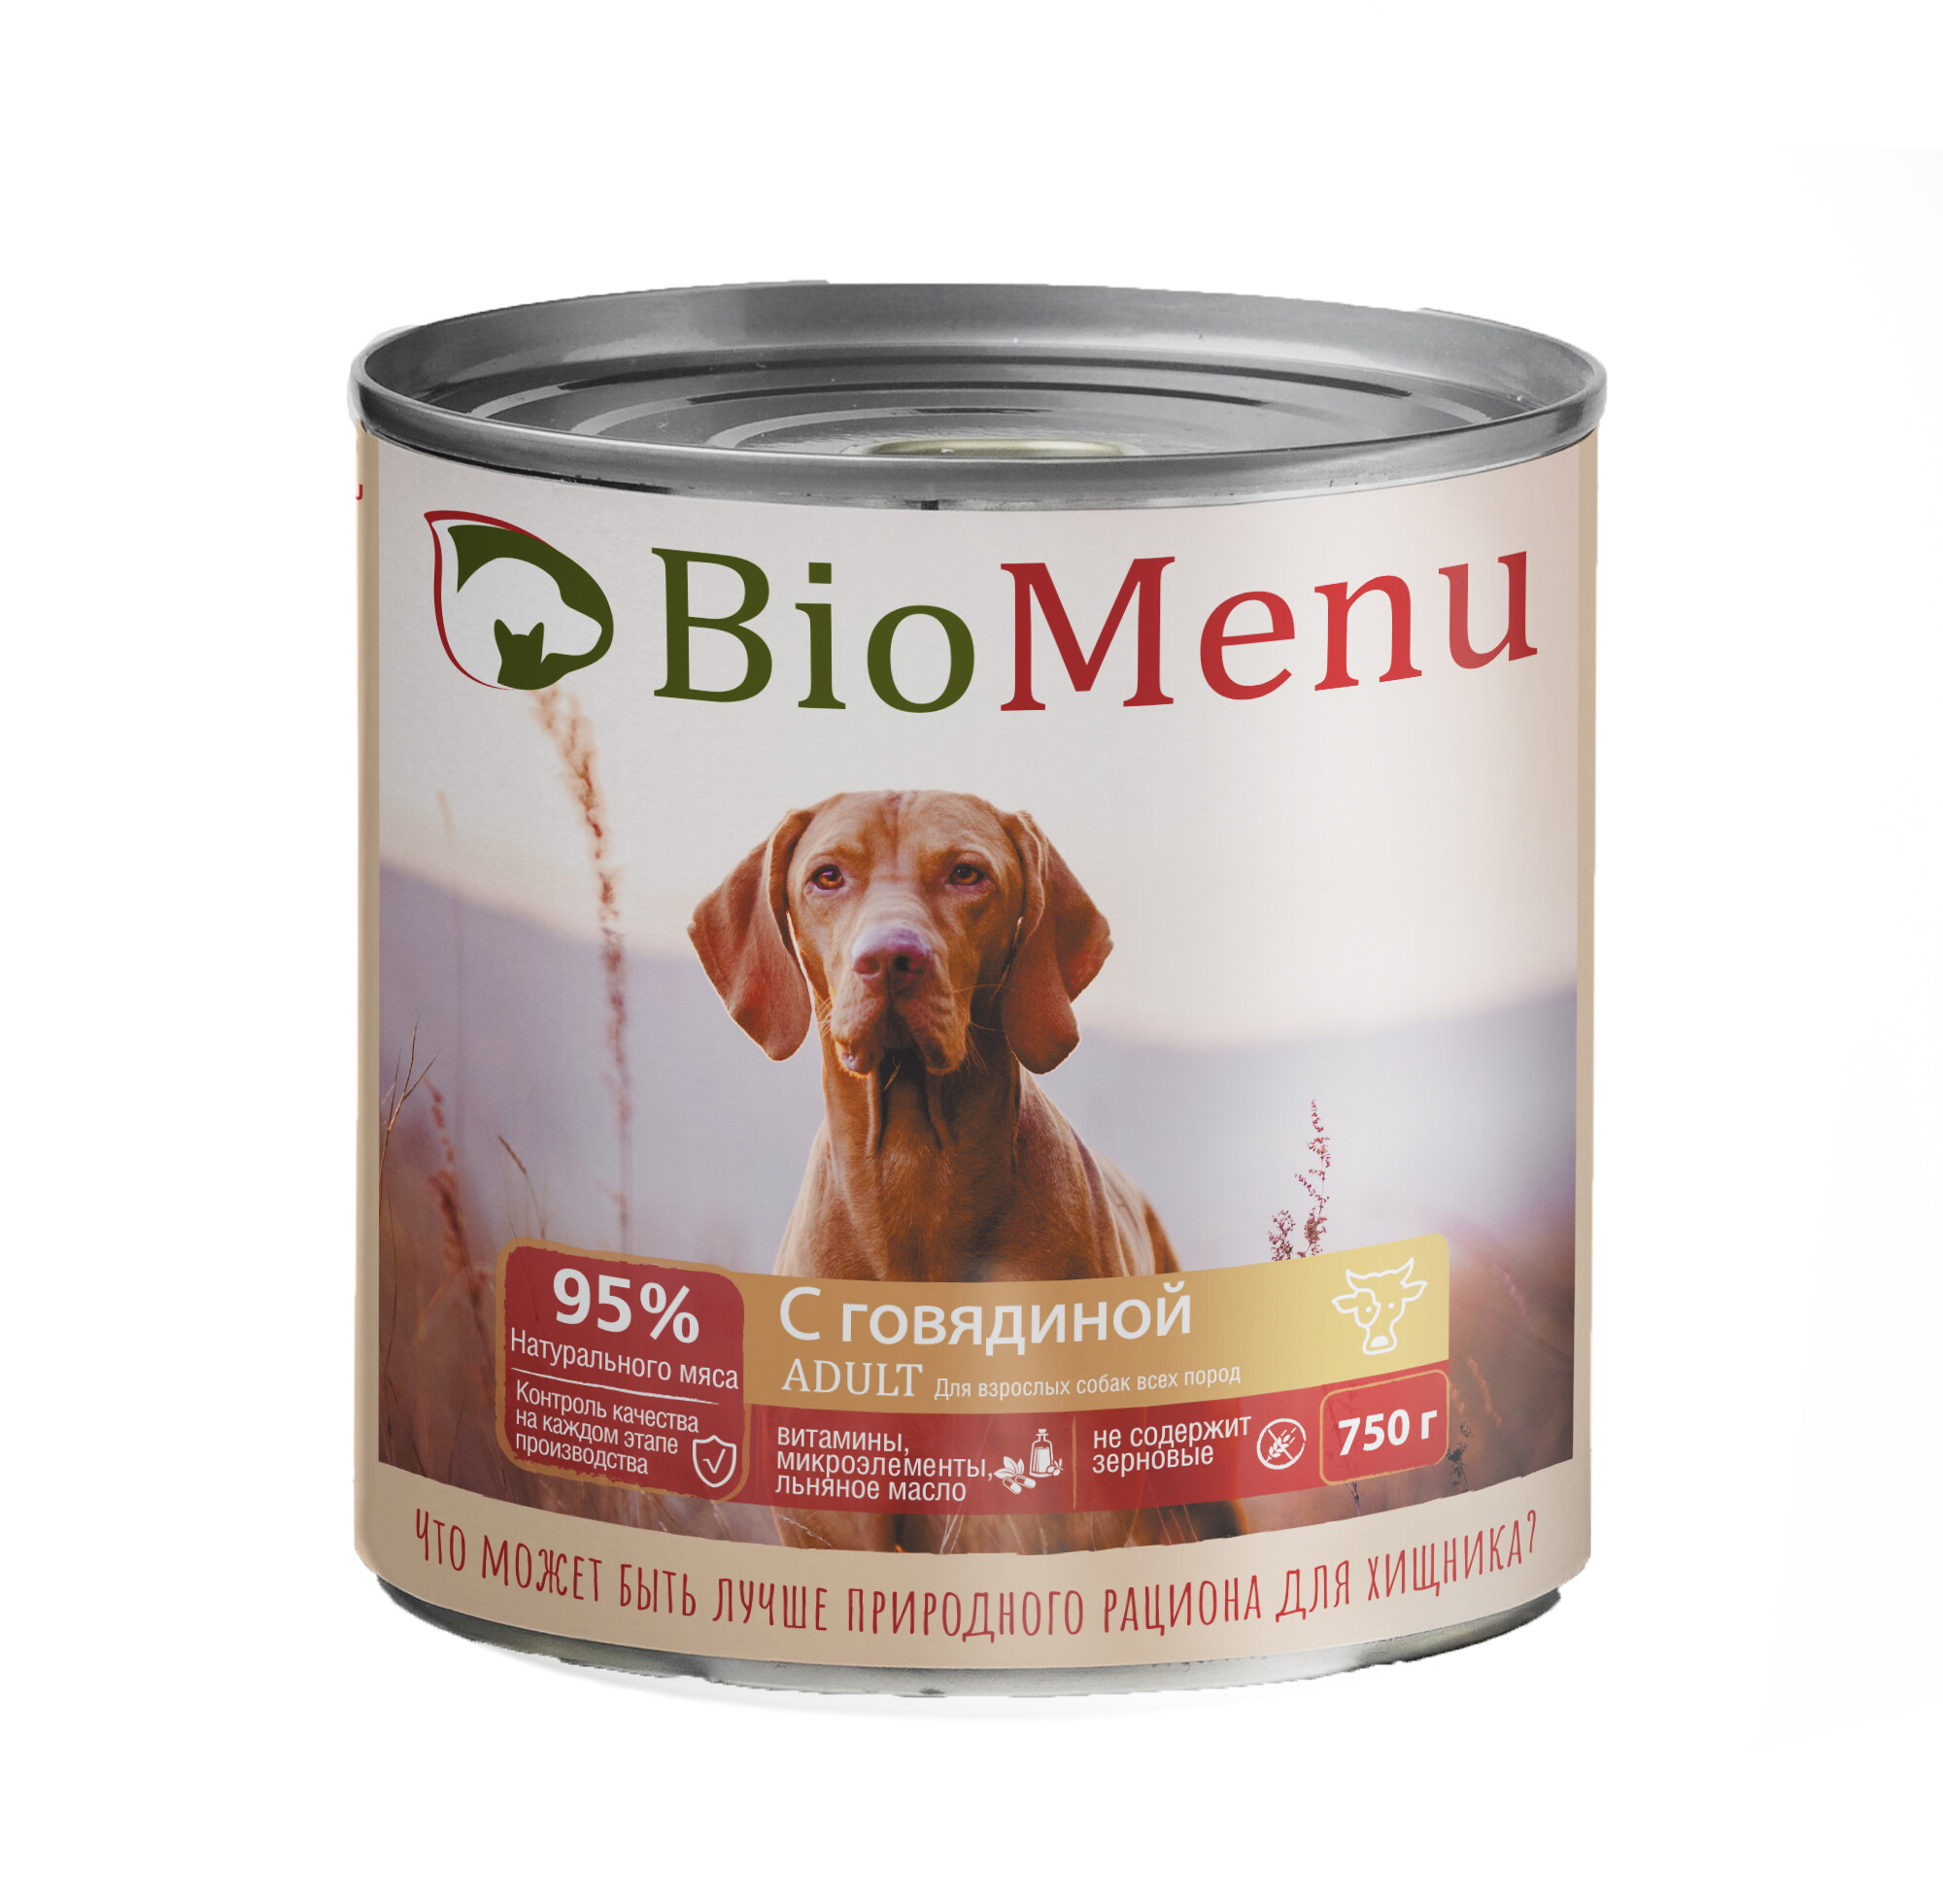 Консервы для собак BioMenu, говядина, 750г